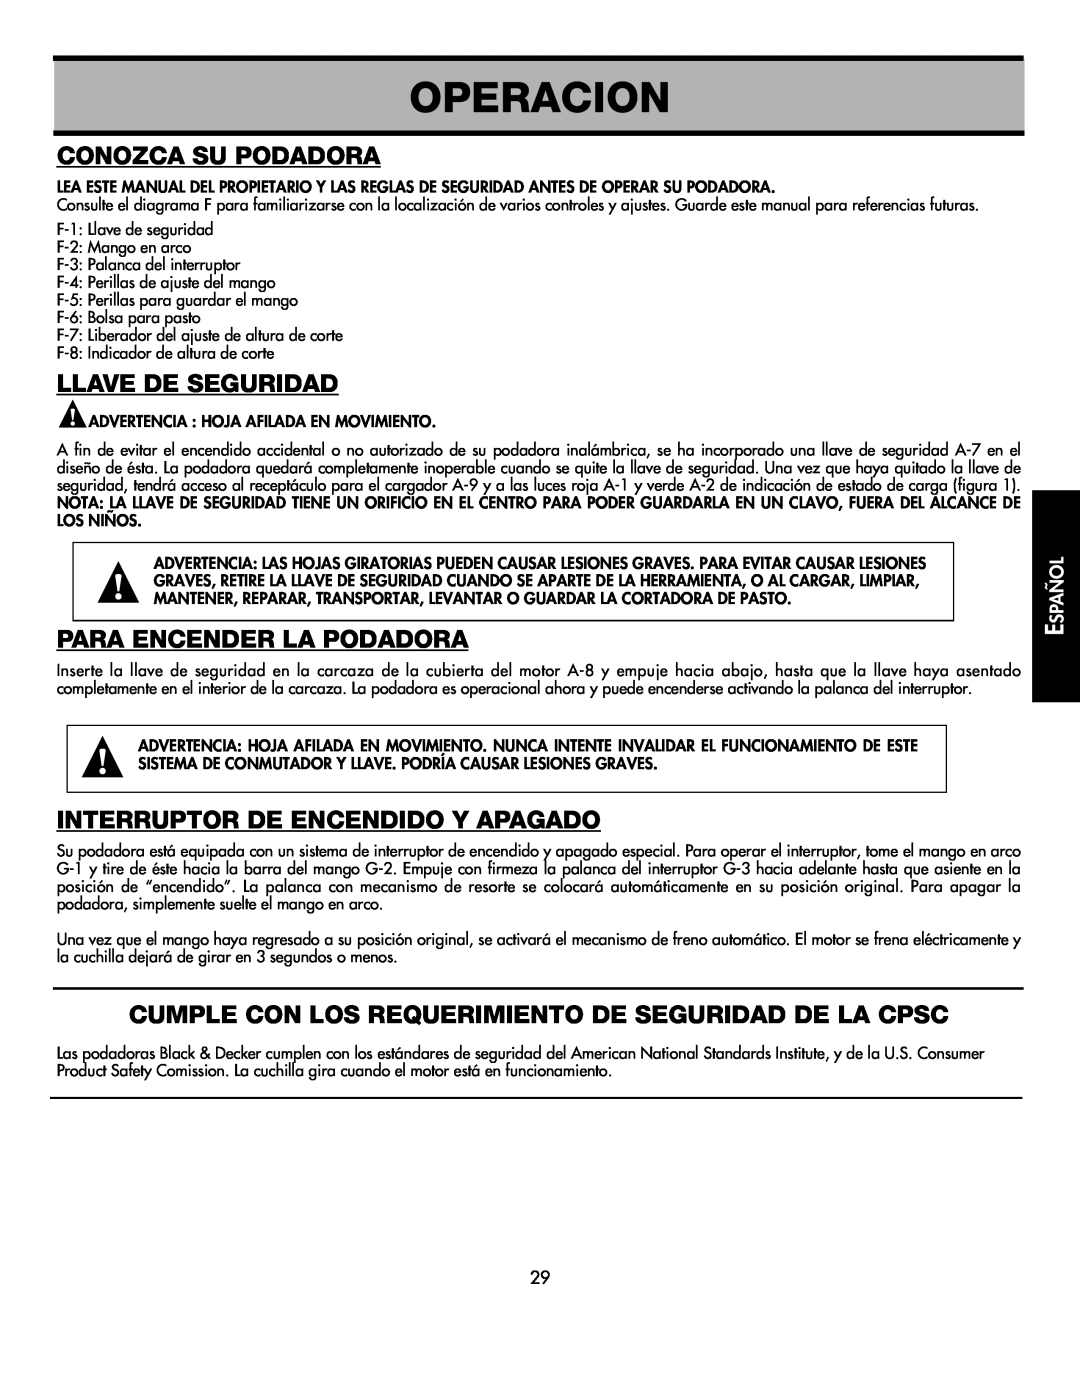 Black & Decker CMM1000 Operacion, Conozca Su Podadora, Llave De Seguridad, Para Encender La Podadora, Español 